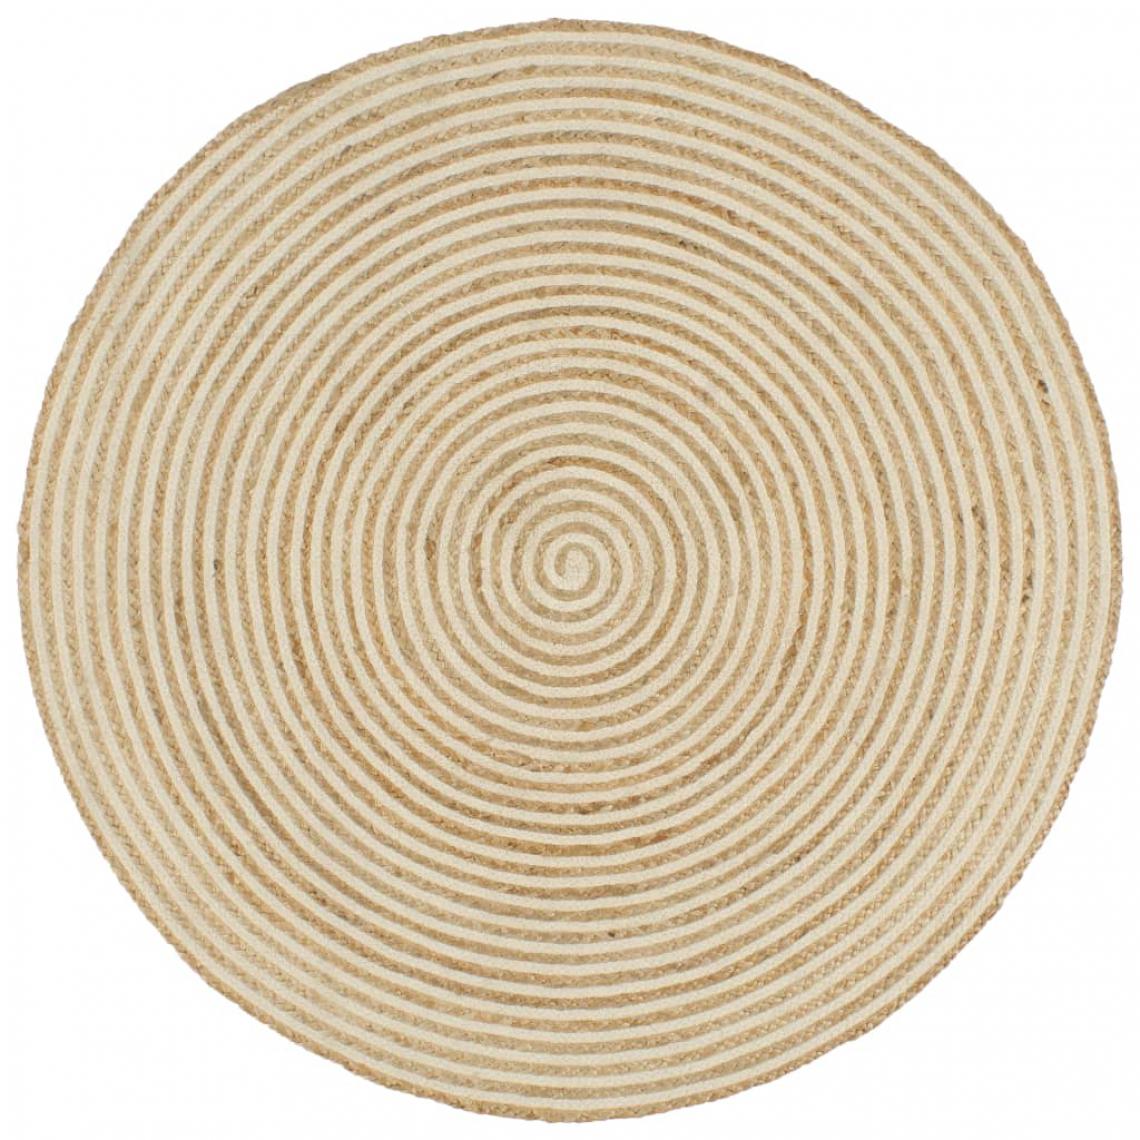 Icaverne - Splendide Décorations collection Luxembourg Tapis fait à la main Jute avec design de spirale Blanc 120 cm - Tapis